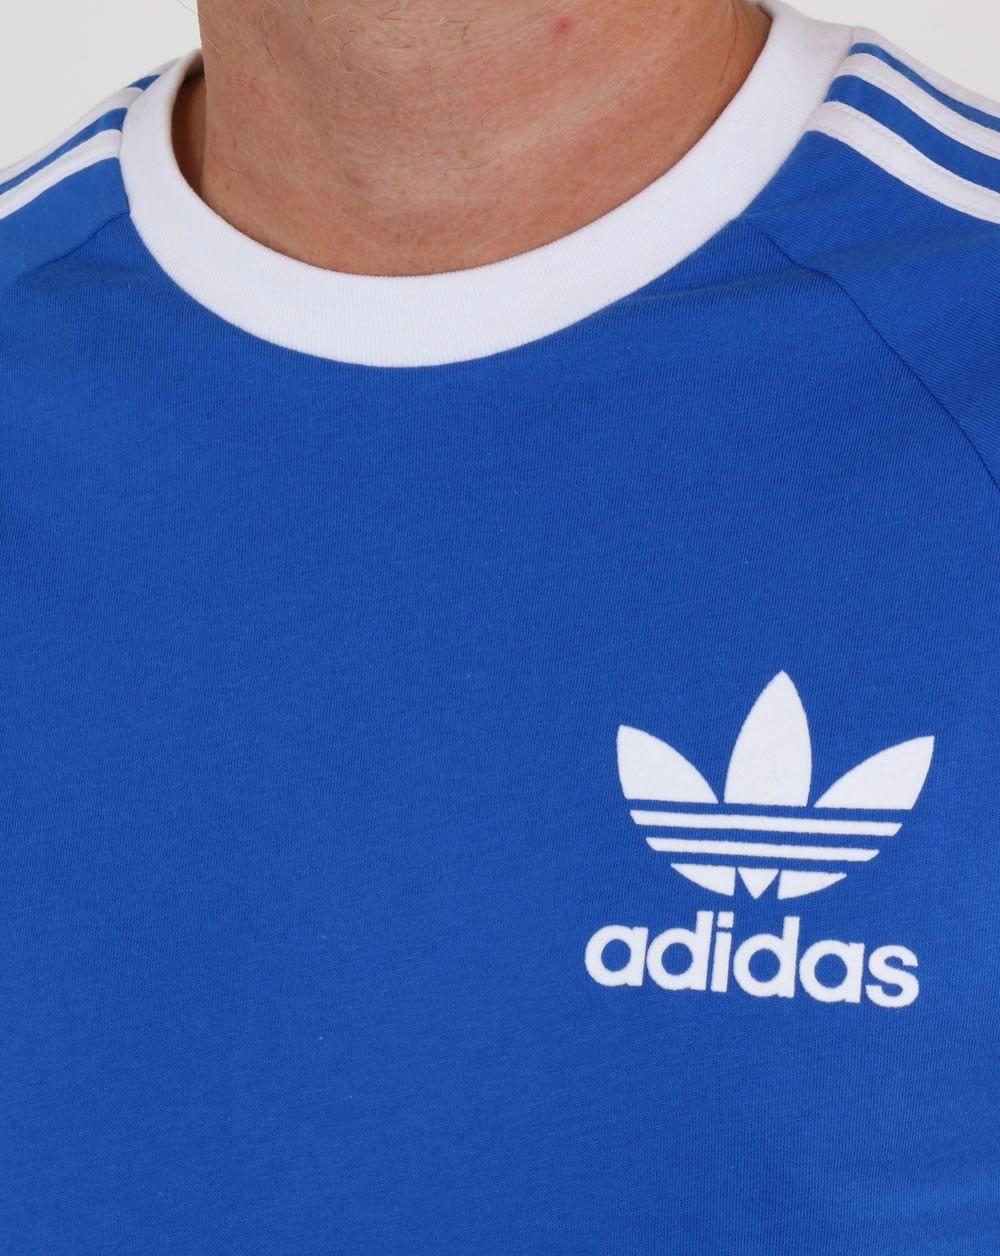 Blue and White Adidas Logo - Adidas T Shirt, blue, California, 3 stripes, originals, mens, tee, royal